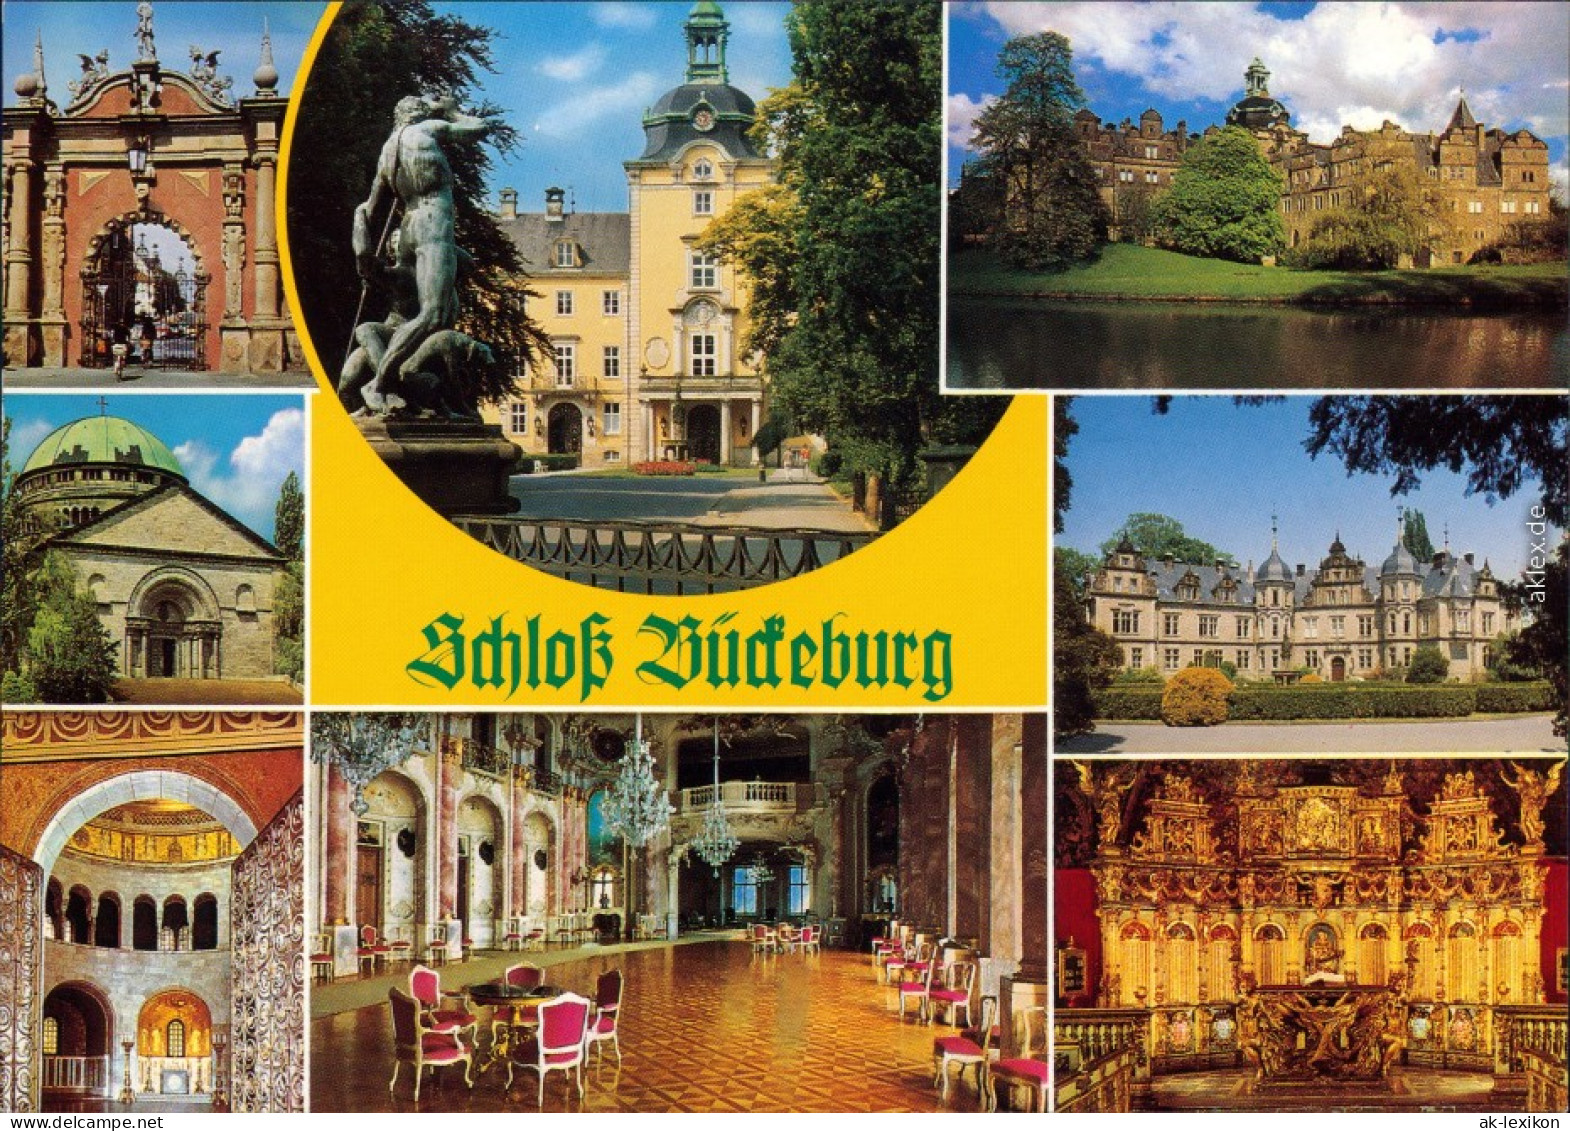 Ansichtskarte Bückeburg Fürstliches Schloss 1989 - Bueckeburg